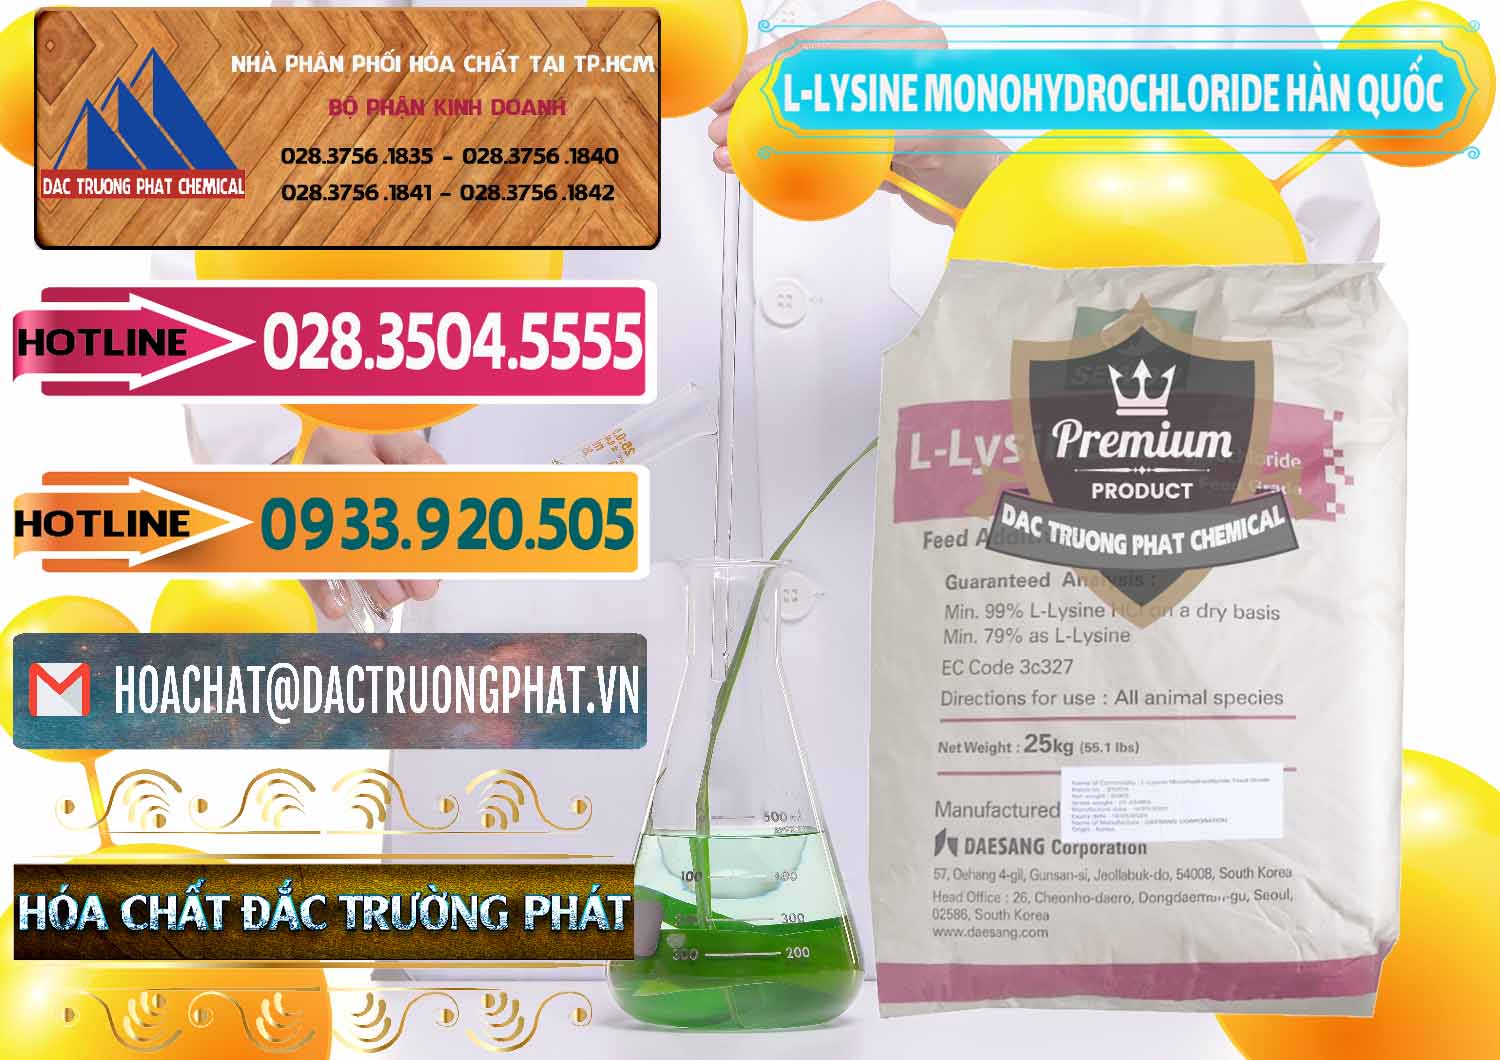 Chuyên bán - phân phối L-Lysine Monohydrochloride Feed Grade Sewon Hàn Quốc Korea - 0302 - Cung cấp & bán hóa chất tại TP.HCM - dactruongphat.vn